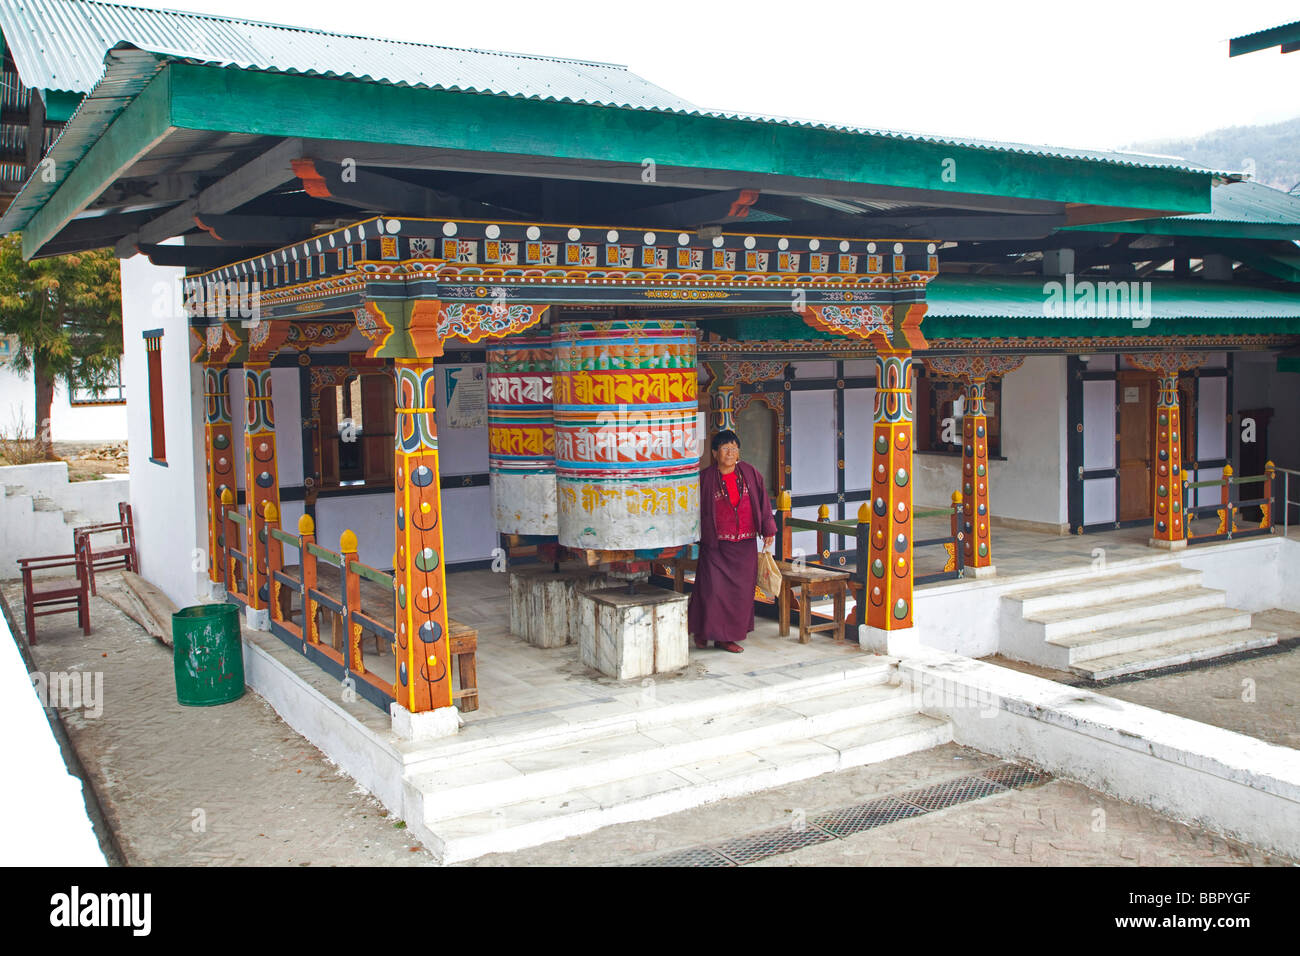 Grande roue de prière, la prière de l'hôpital de Thimphu Bhoutan Asie 91142 Bhutan-Thimphu horizontale Banque D'Images